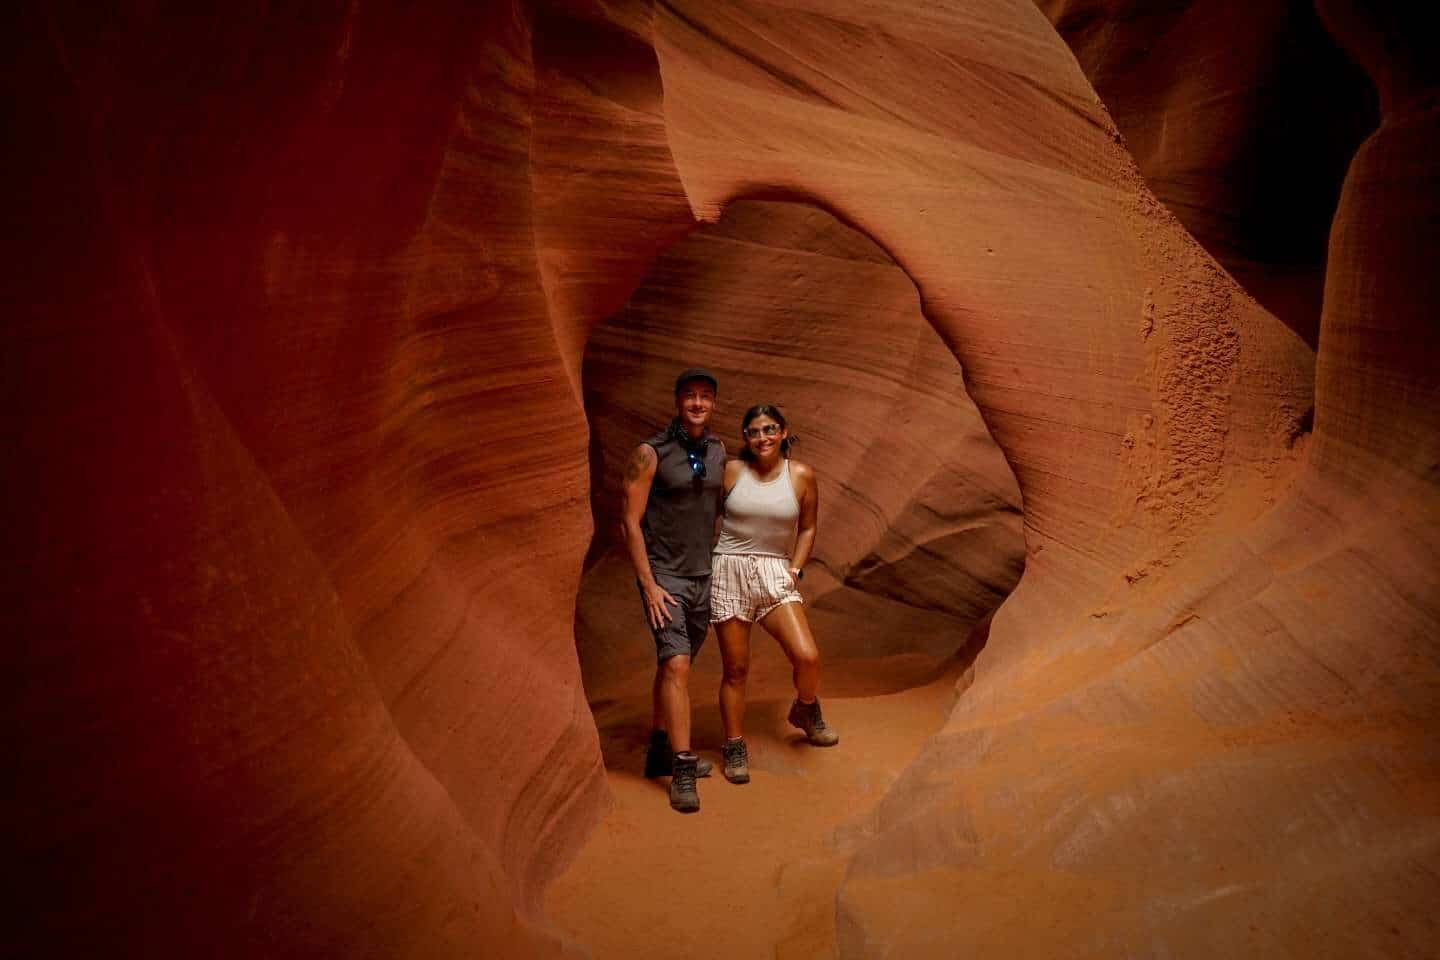 Tom and Anna at Antelope Canyon